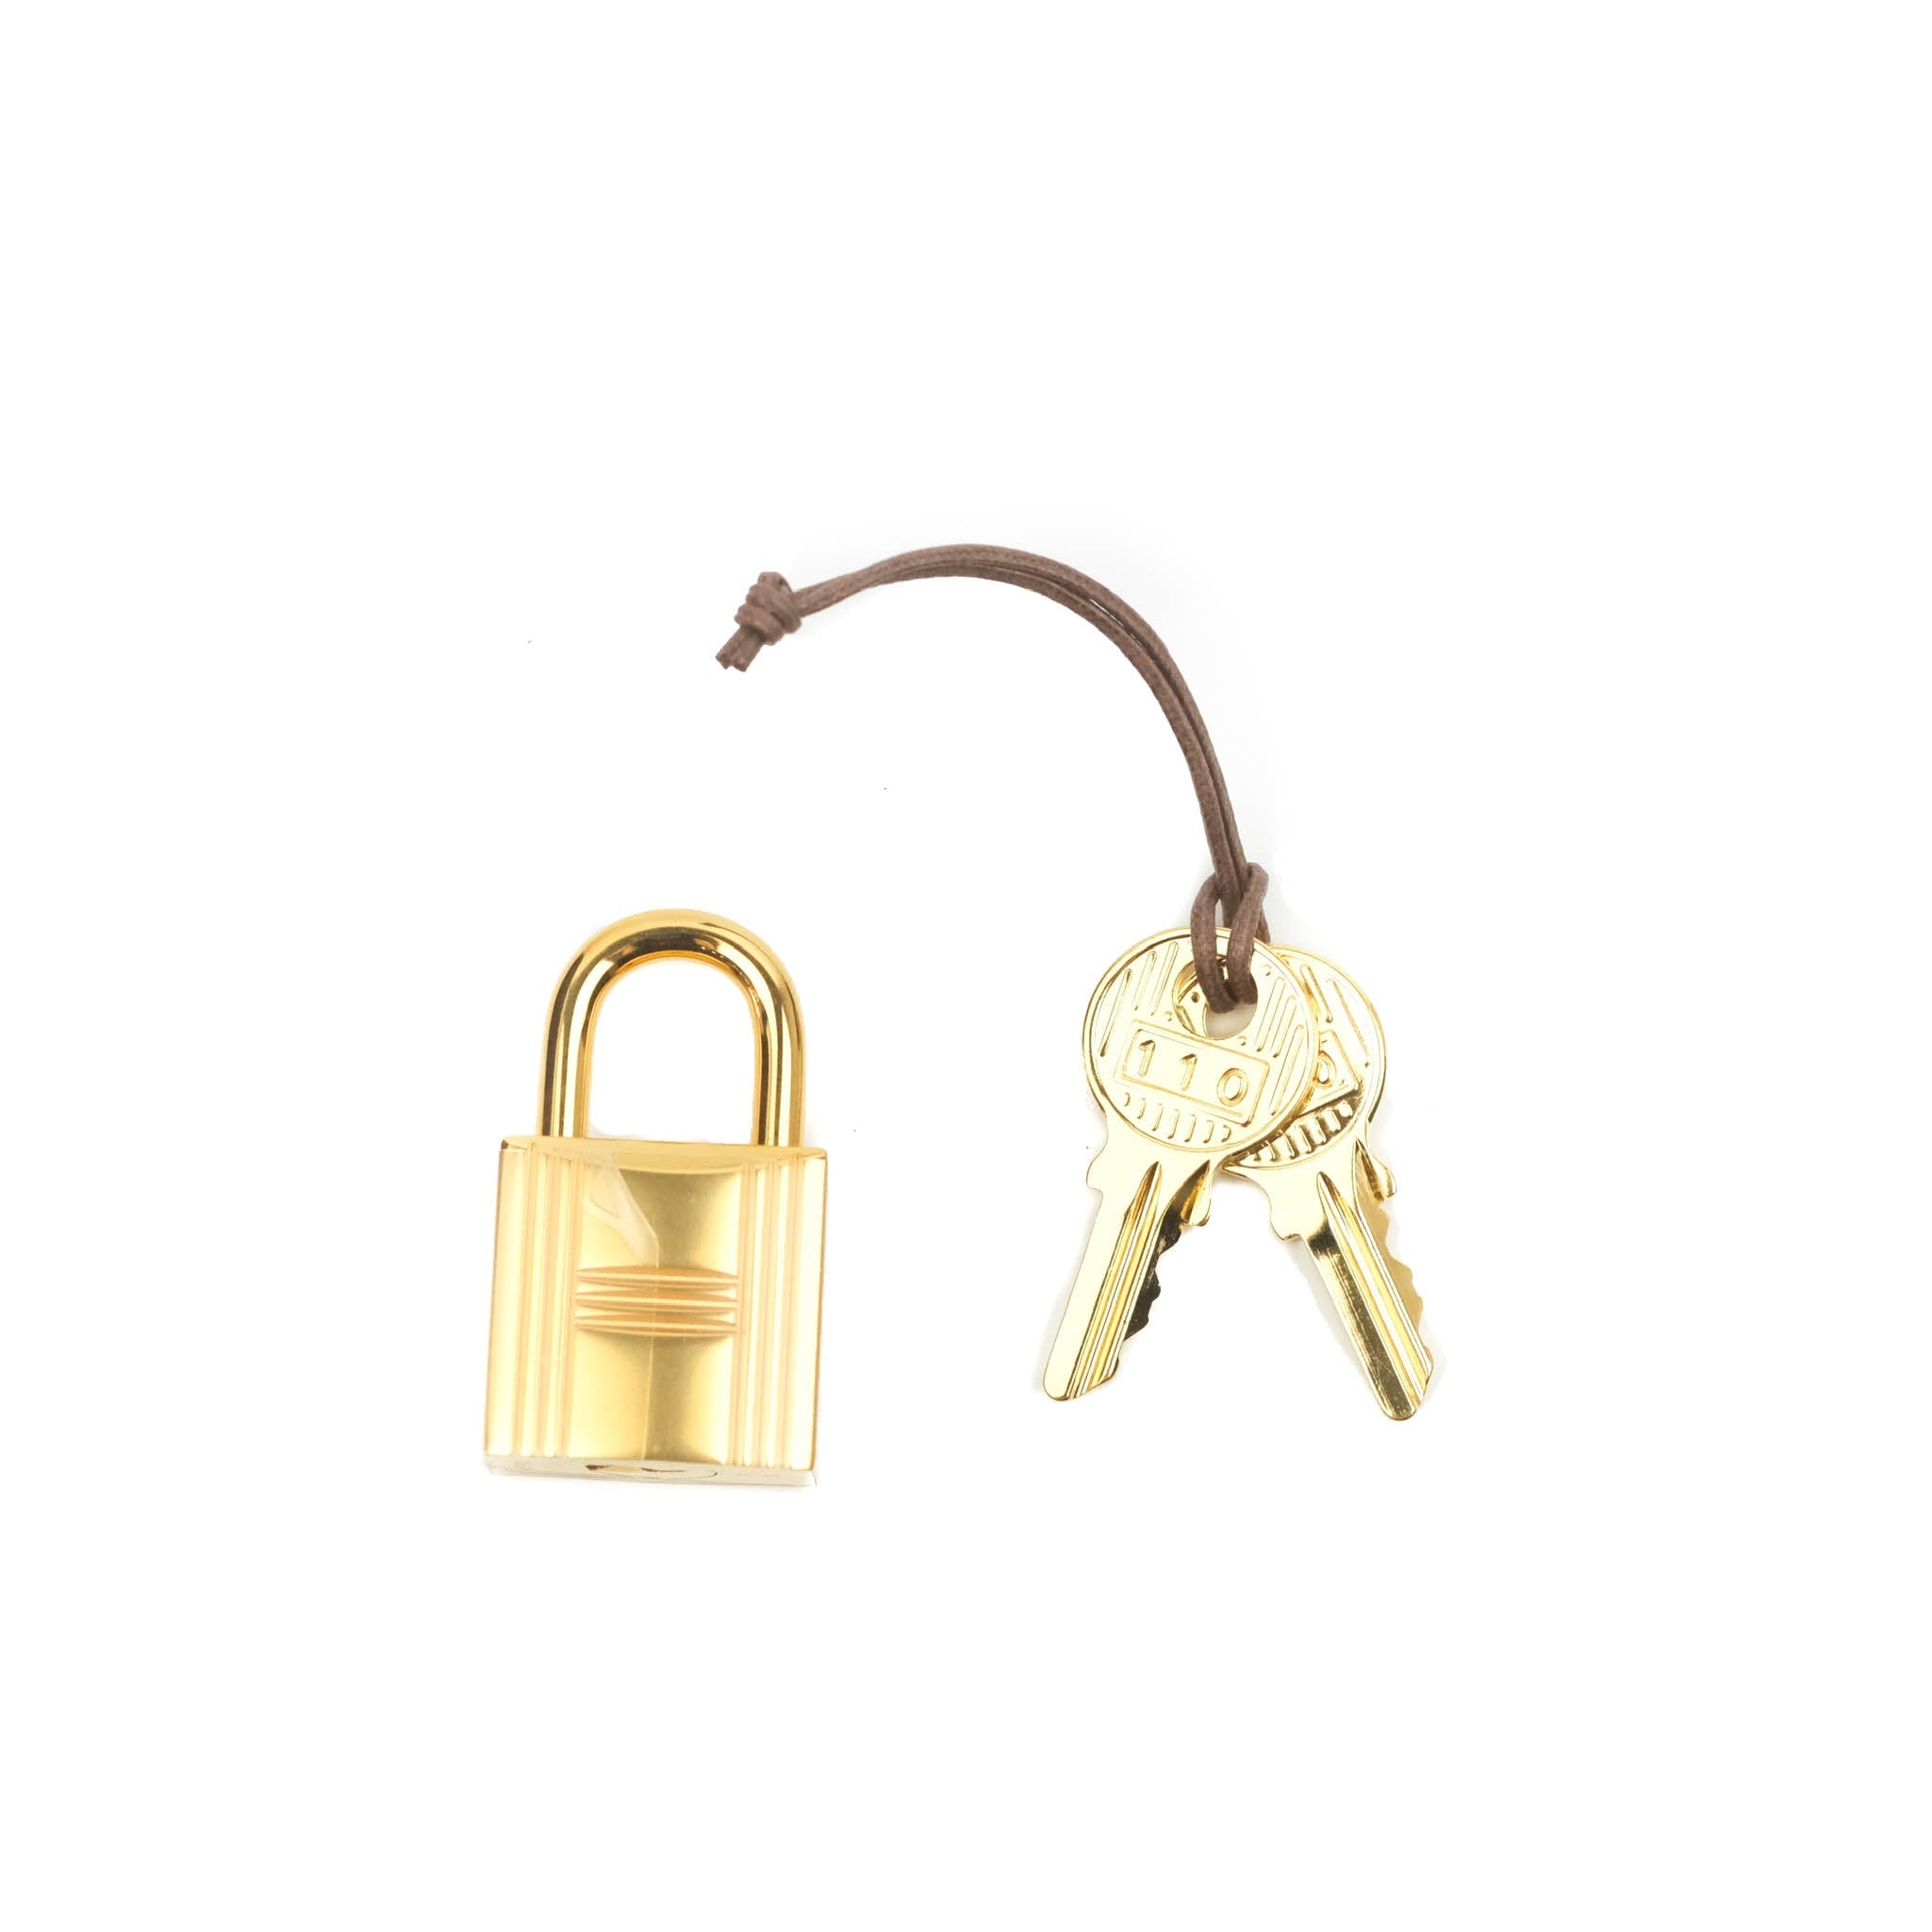 Hermes Rouge de Coeur Red Picotin Lock 18 PM Handbag – MAISON de LUXE